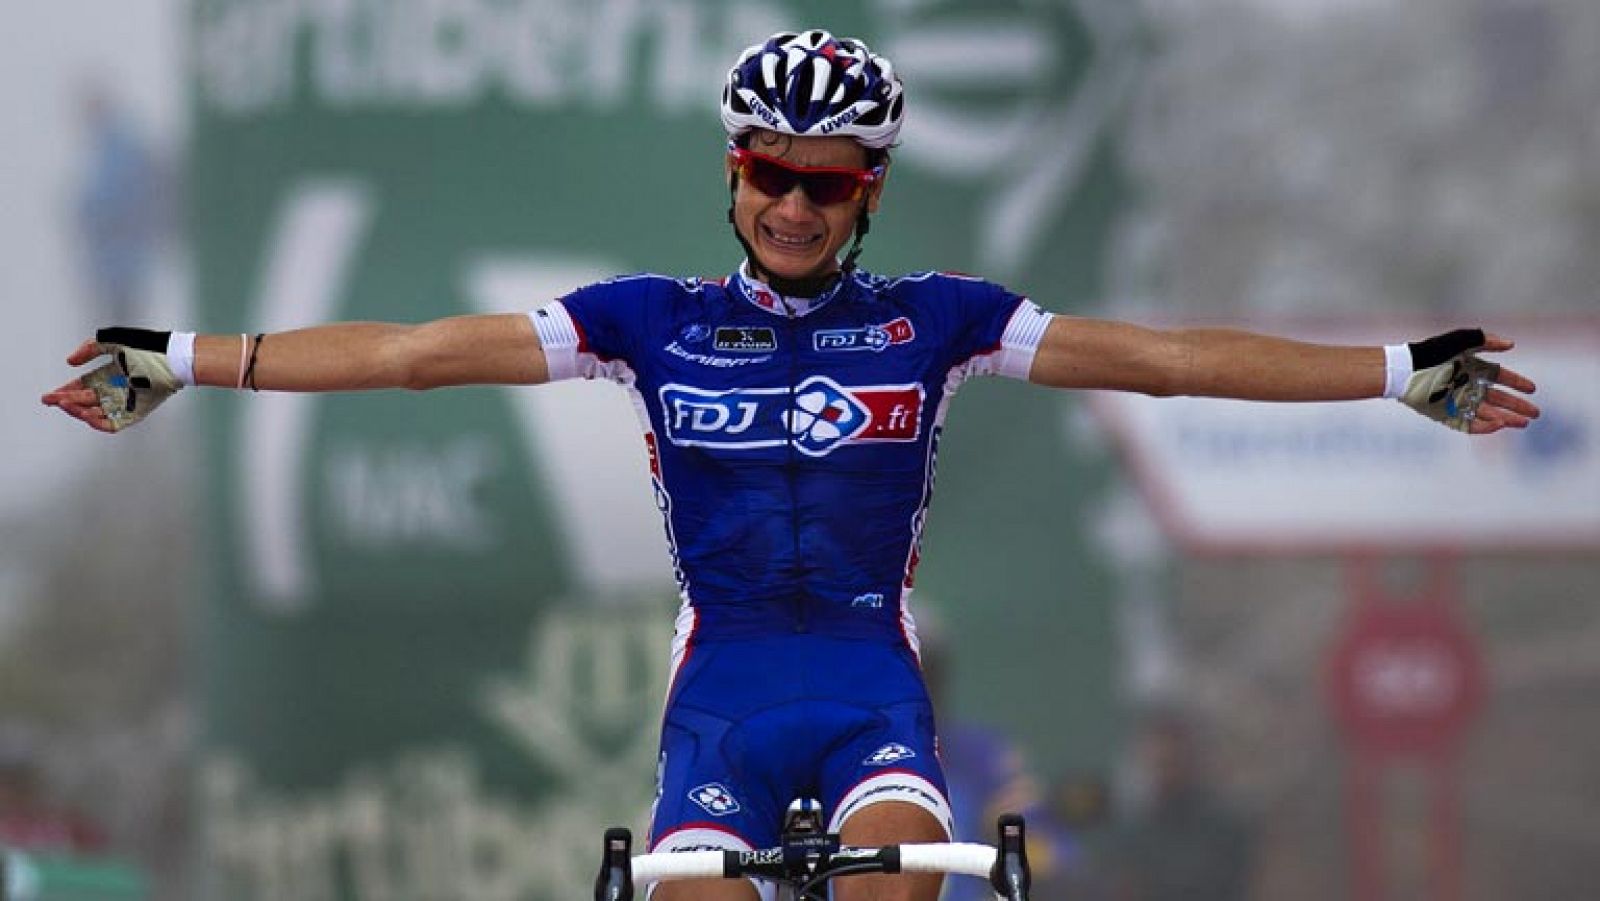 Vuelve a ver la subida íntegra al mítico coloso asturiano que ha dejado sentenciada la Vuelta en favor de Chris Horner.